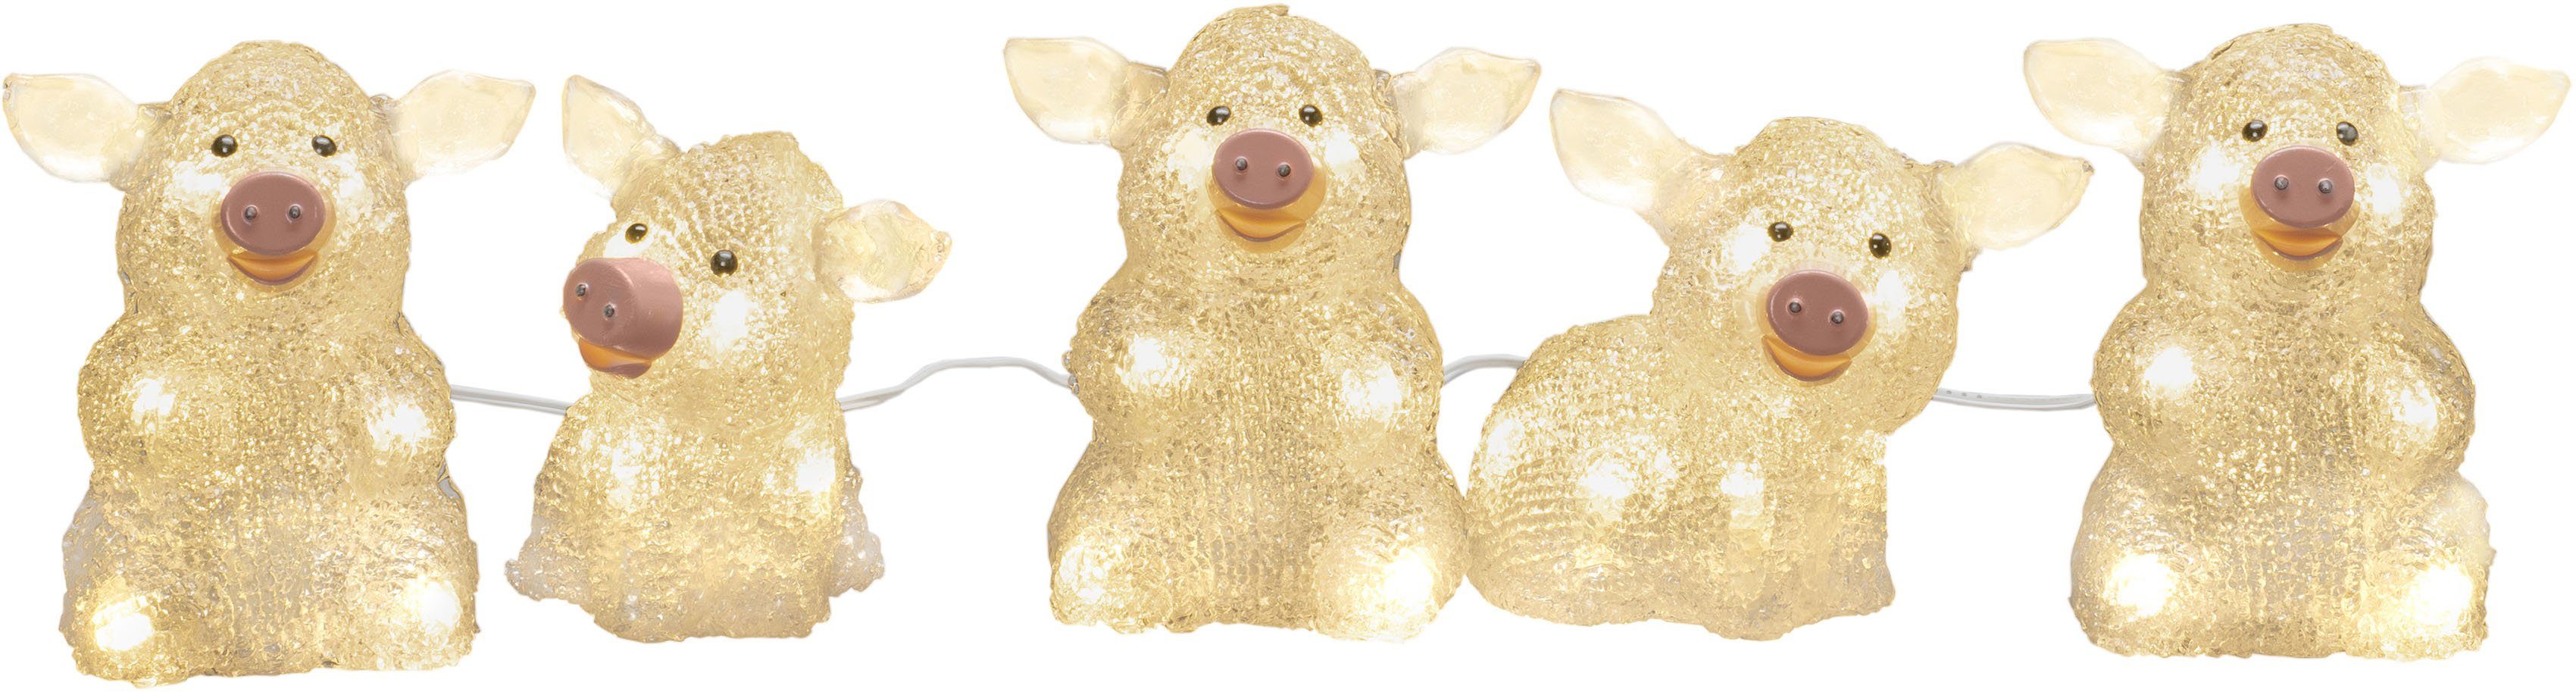 KONSTSMIDE LED-Lichterkette Schwein, 40-flammig, LED Acryl Schweine 5-er Set,  transparent, 40 warm weiße Dioden